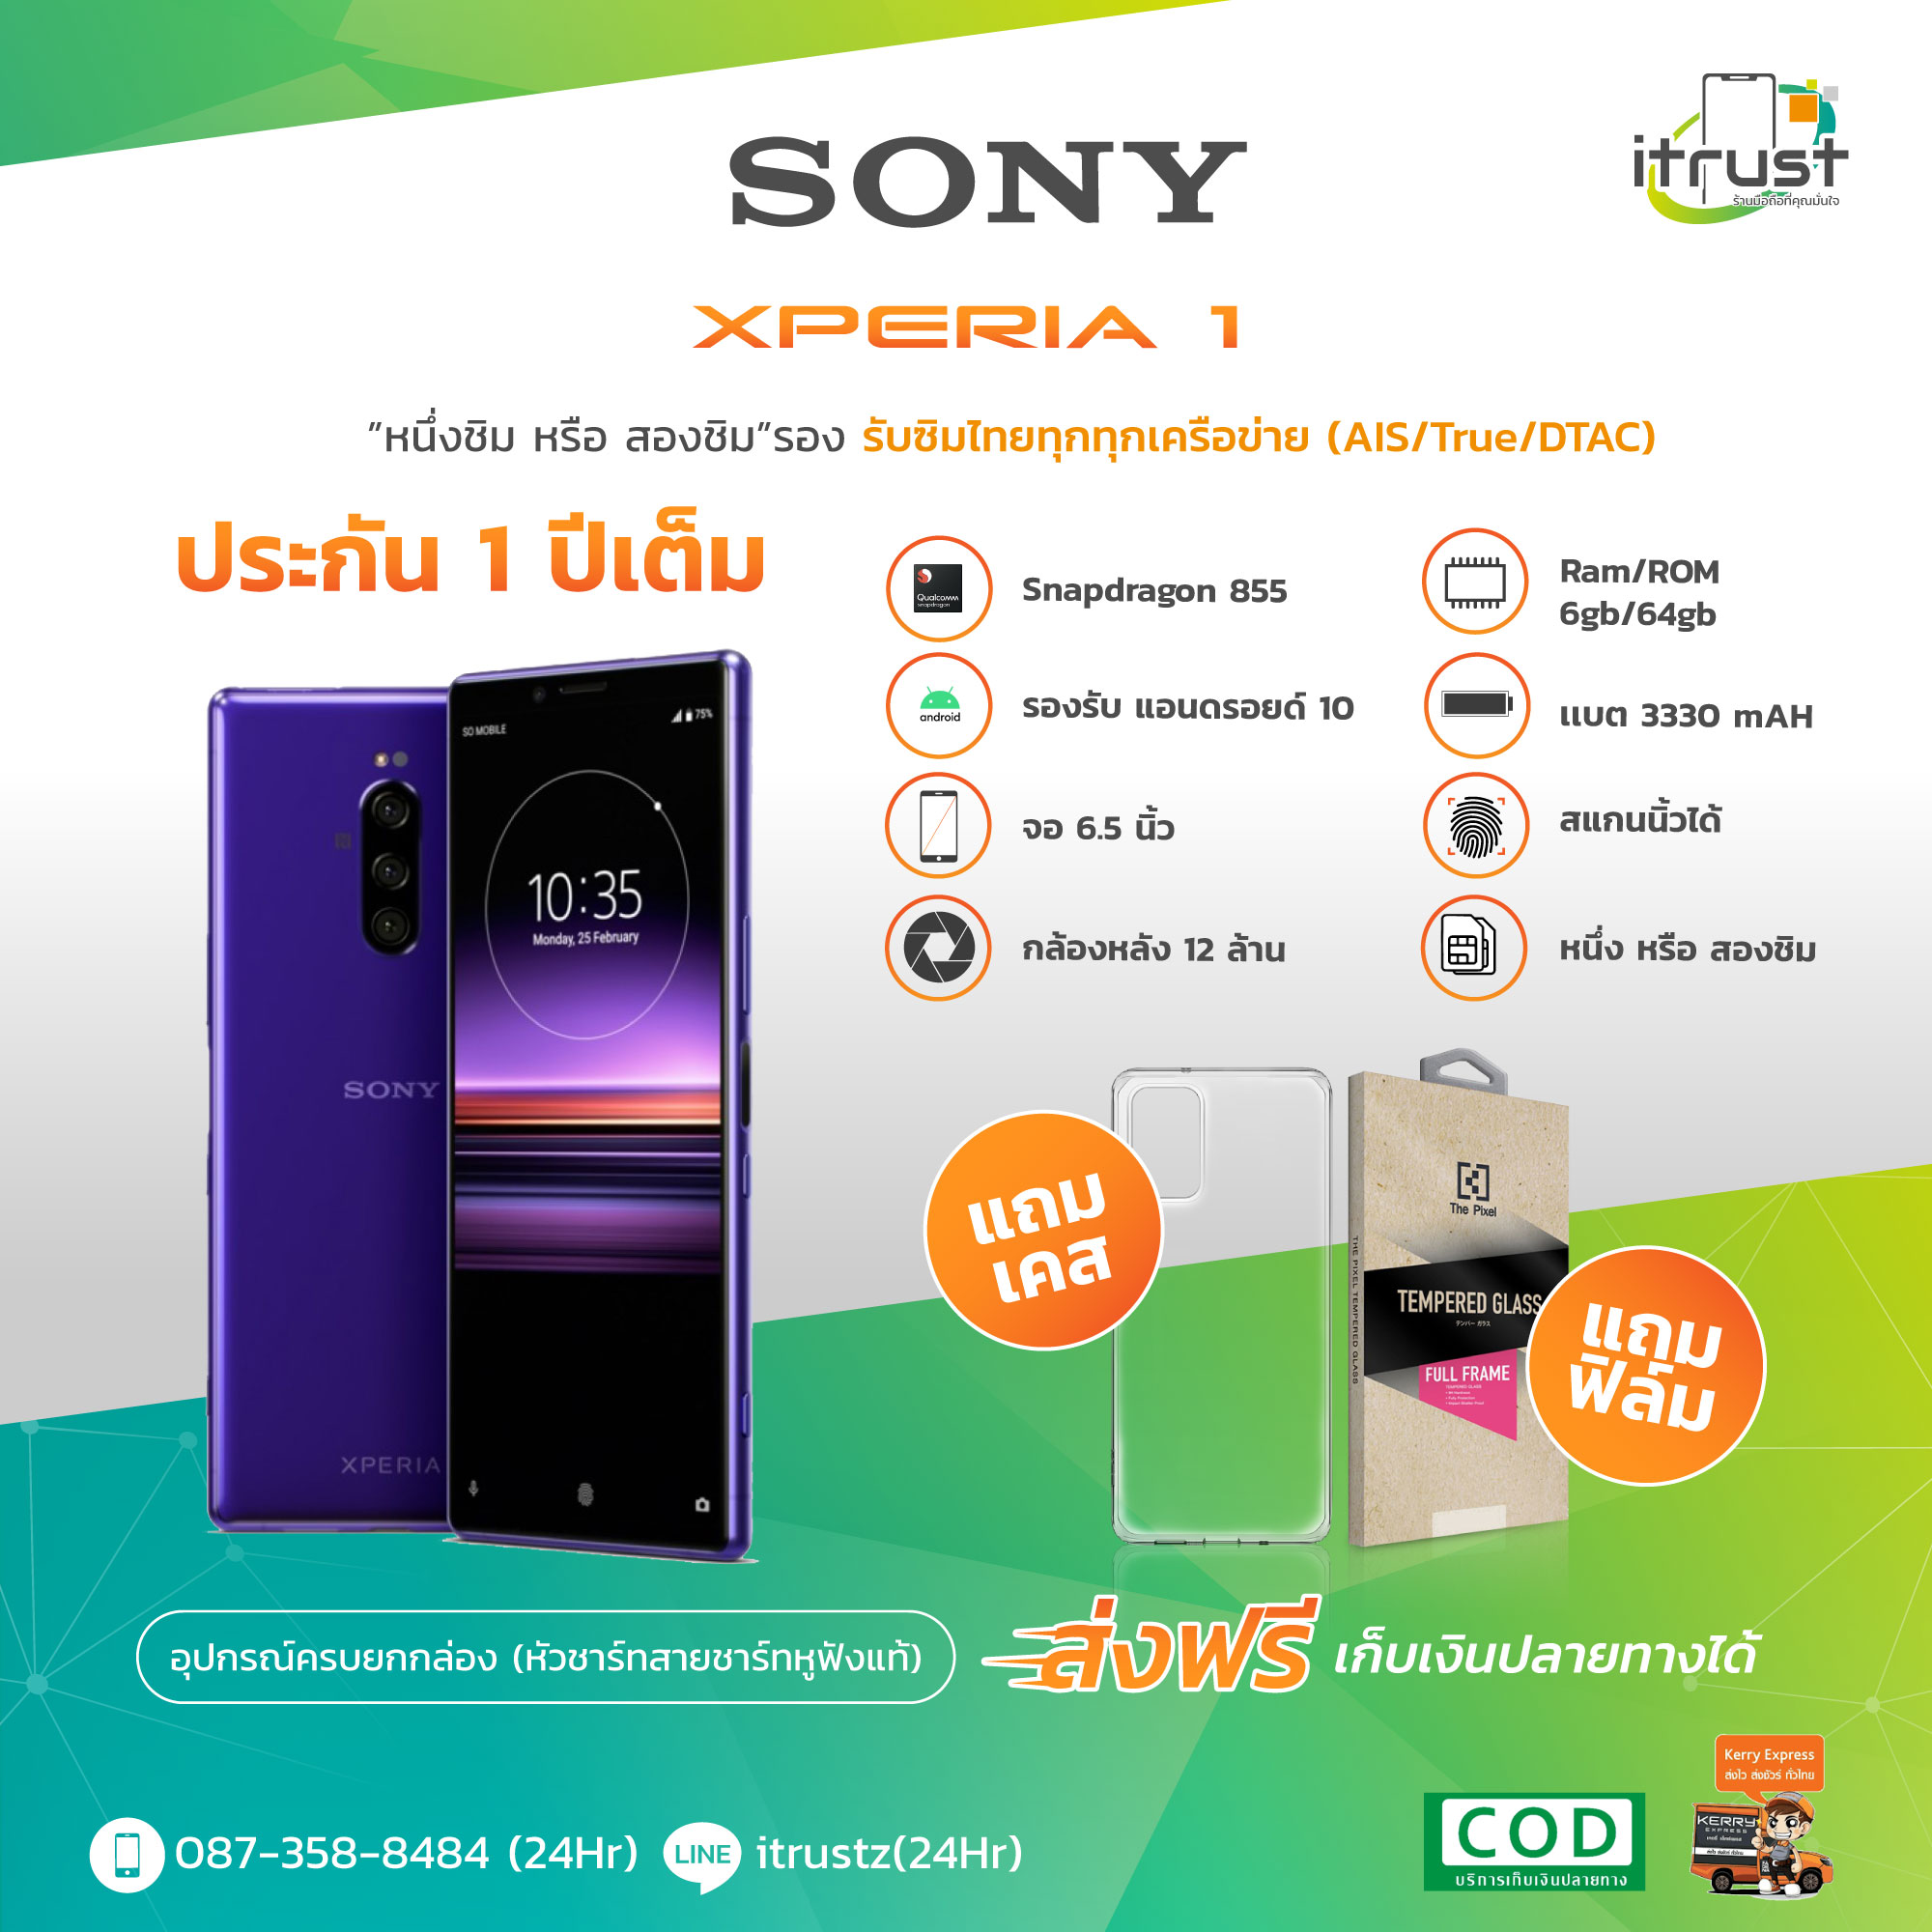 มุมมองเพิ่มเติมของสินค้า Sony Xperia 1 จอ 6.5 นิว / สองซิม / Rom 6GB/64GB/เครื่องแท้ อุปกรณ์ครบเชต เครื่องใหม่กล่องยังไม่แกะ/มีภาษาไทย (รับประกัน1ปี)